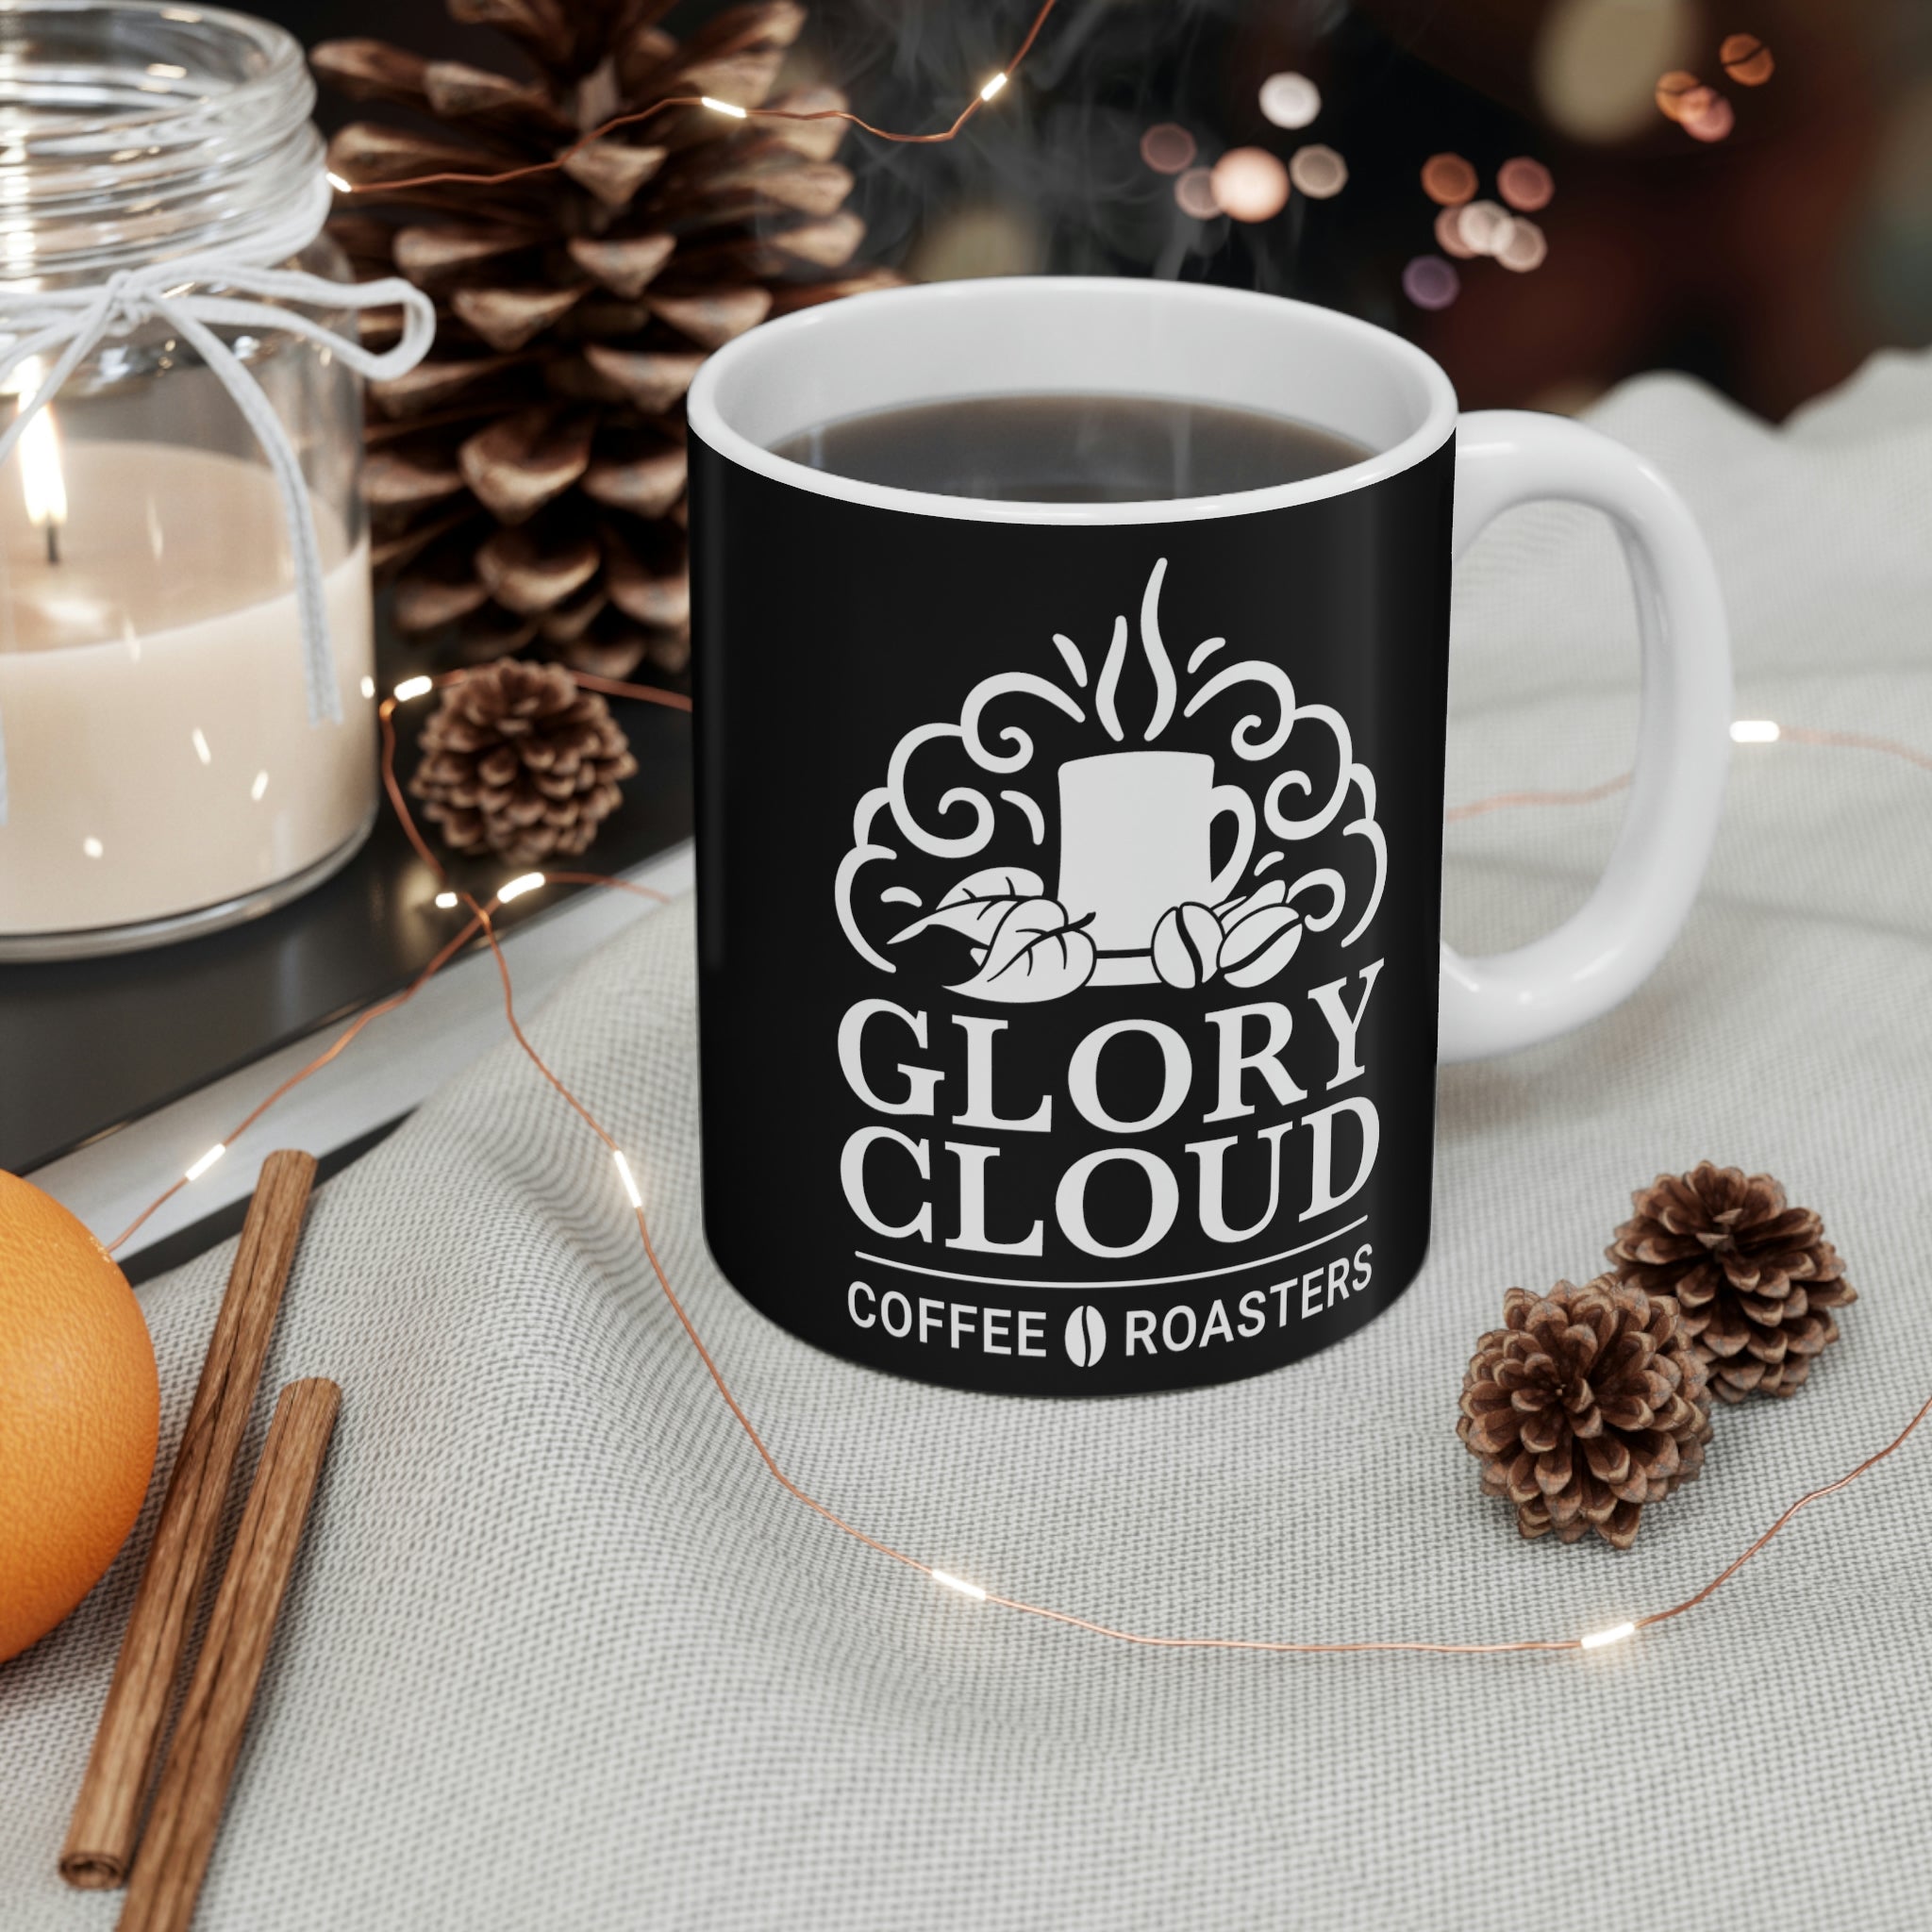 Glory Cloud Coffee Roasters Coffee & Tea Mug 11oz